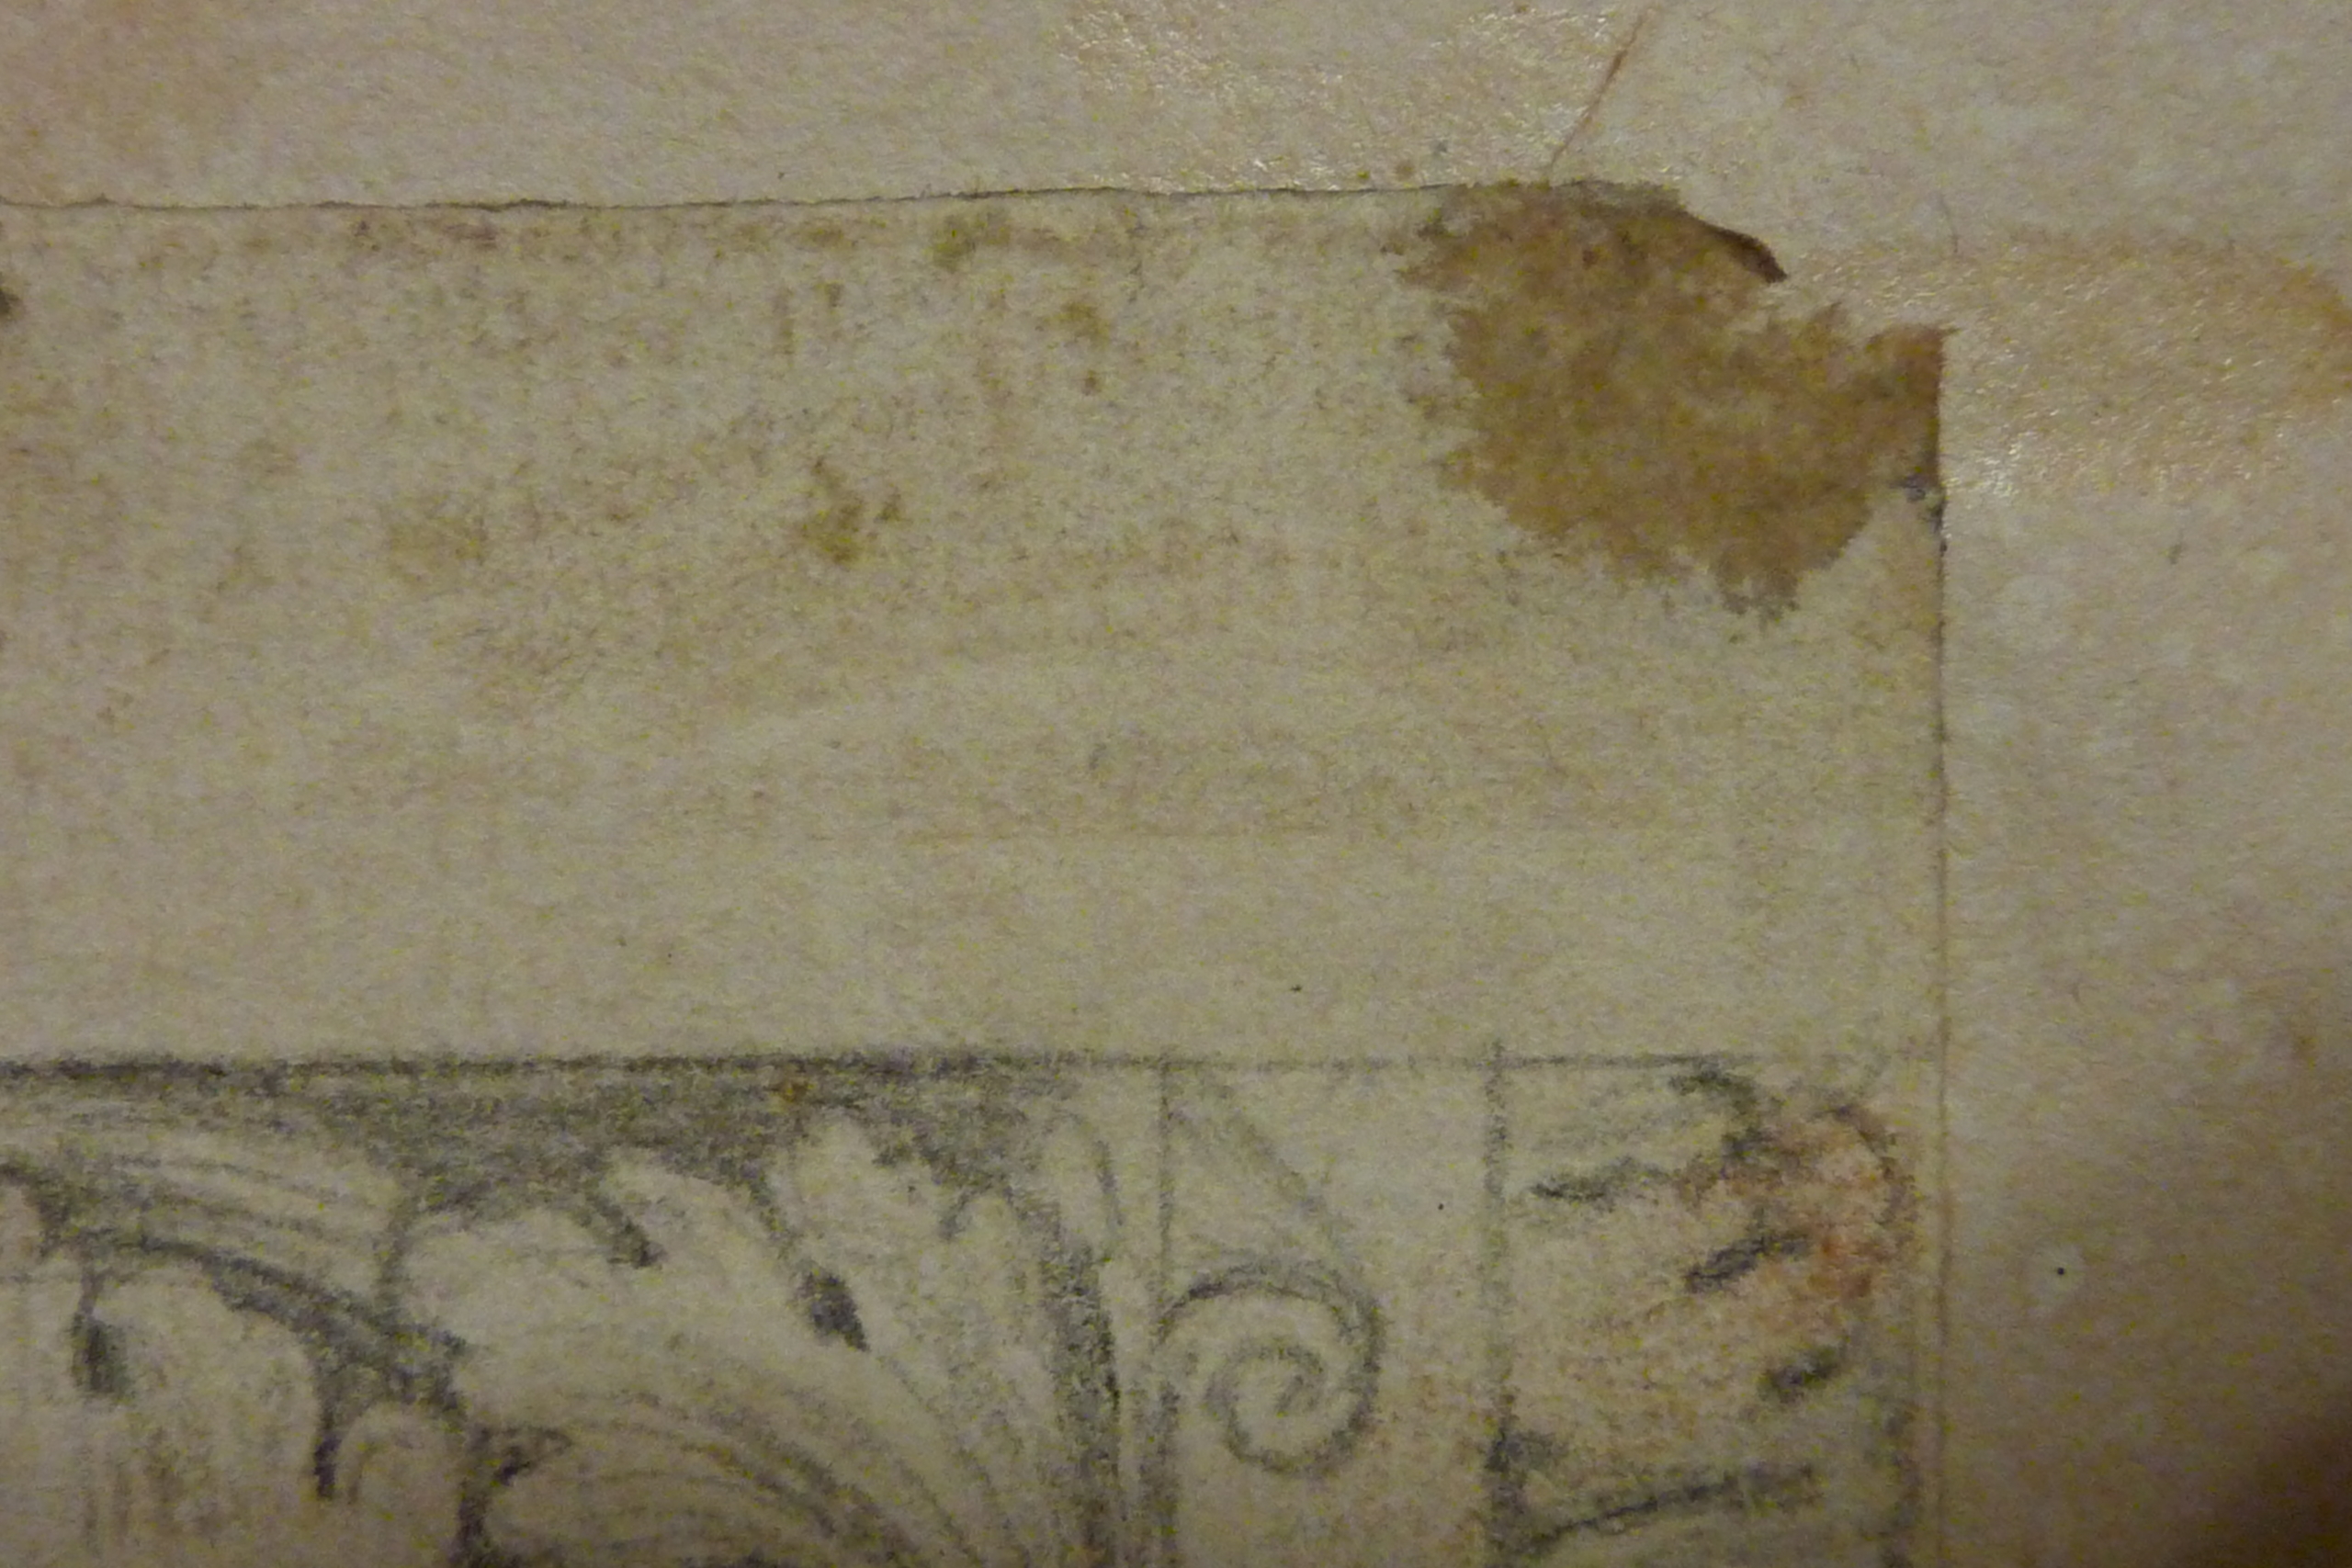 Das Bild zeigt Klebstoff, der an den Ecken eines Papiers angebracht wurde und sich Klebepunkt nennt.